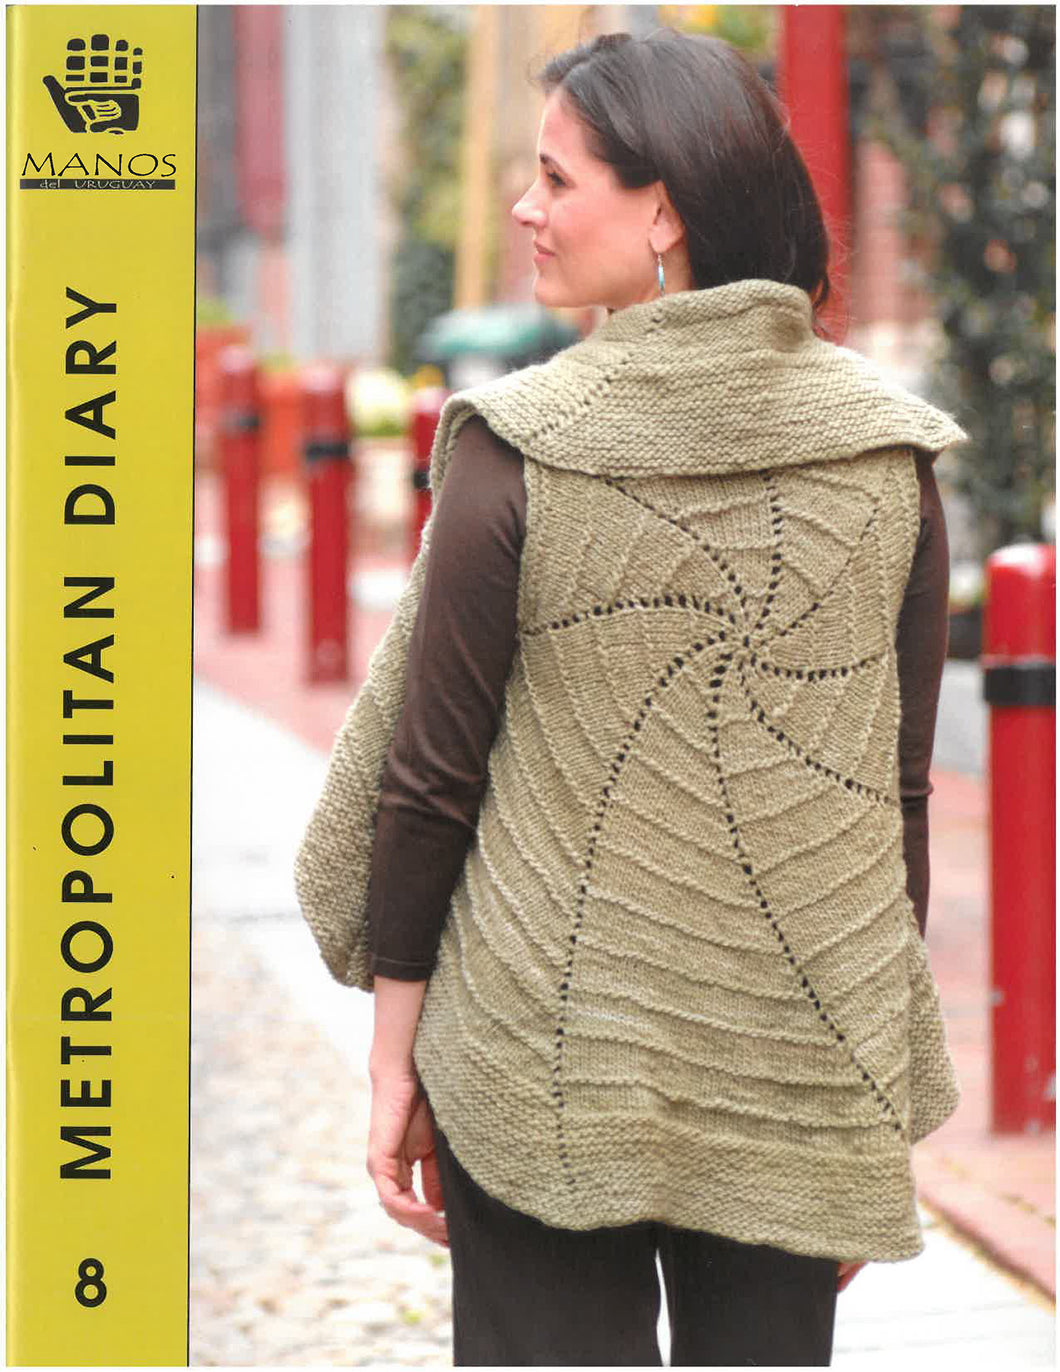 Manos Wool Clásica Collection 8: Metropolitan Diary